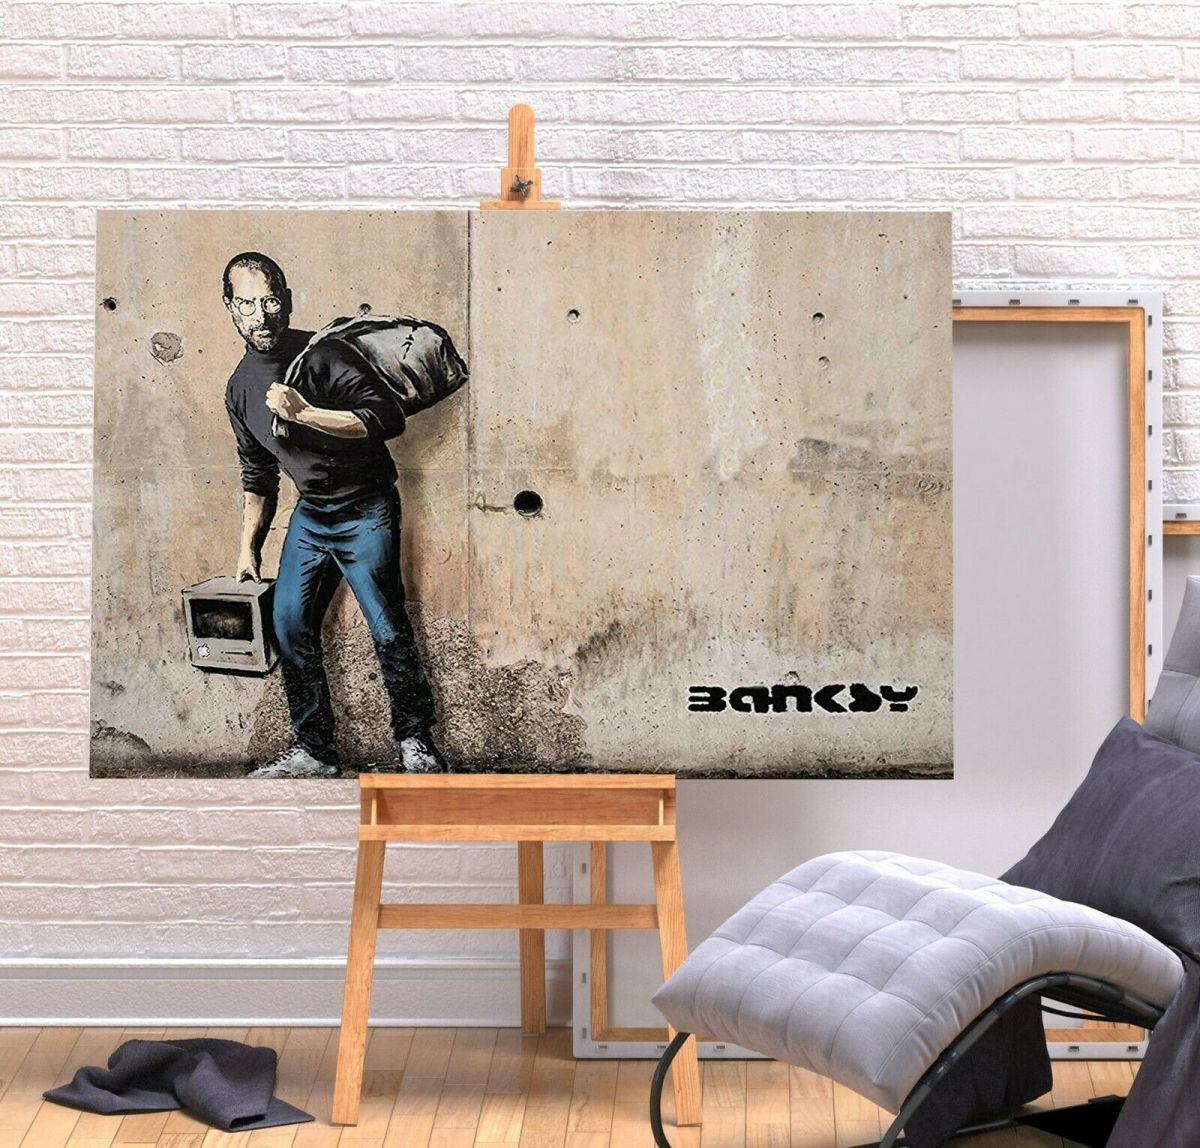 Banksy 하이 엔드 캔버스 프레임 포스터 그림 A1 아트 패널 북유럽 해외 사진 용품 그림 인테리어 스티브 잡스, 인쇄물, 포스터, 다른 사람